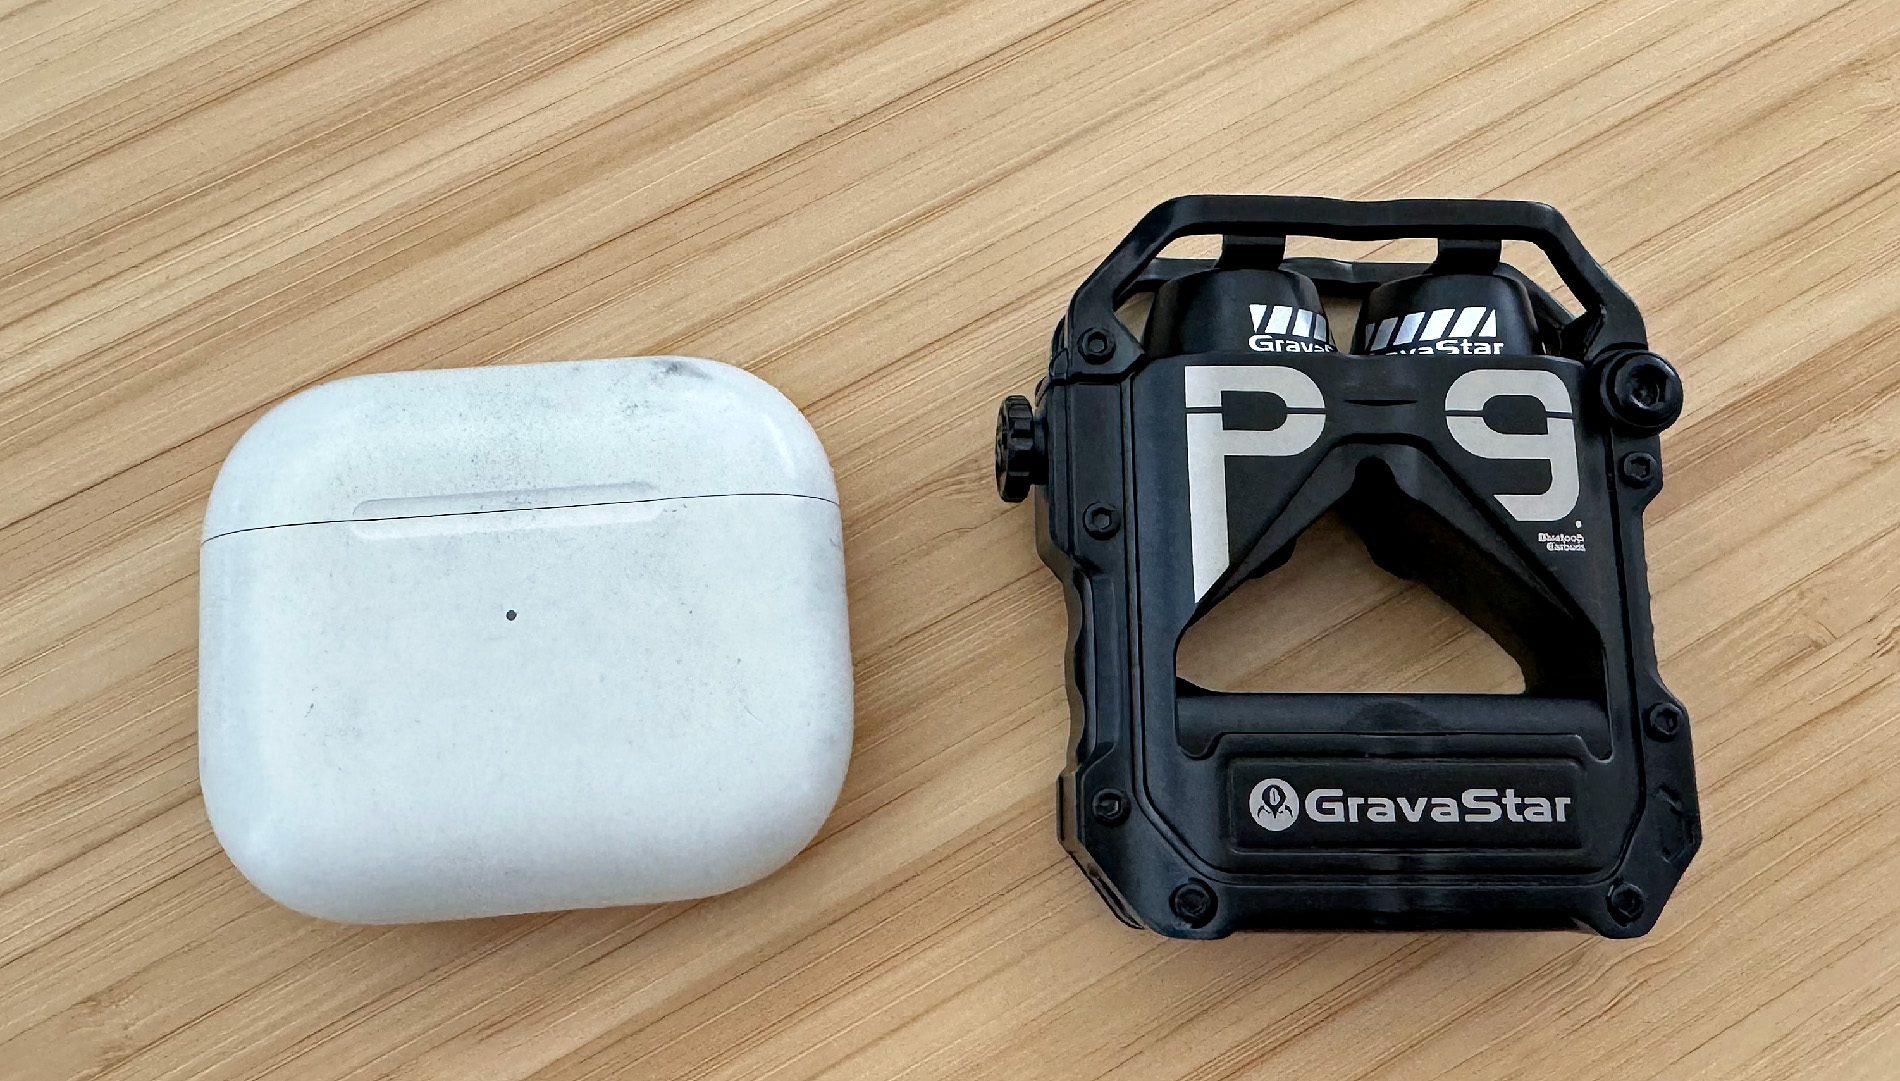 Das Case der AirPods Pro ist eher ein Handschmeichler, während das Case der GravaStar Sirius Pro eher ein Design-Objekt ist.